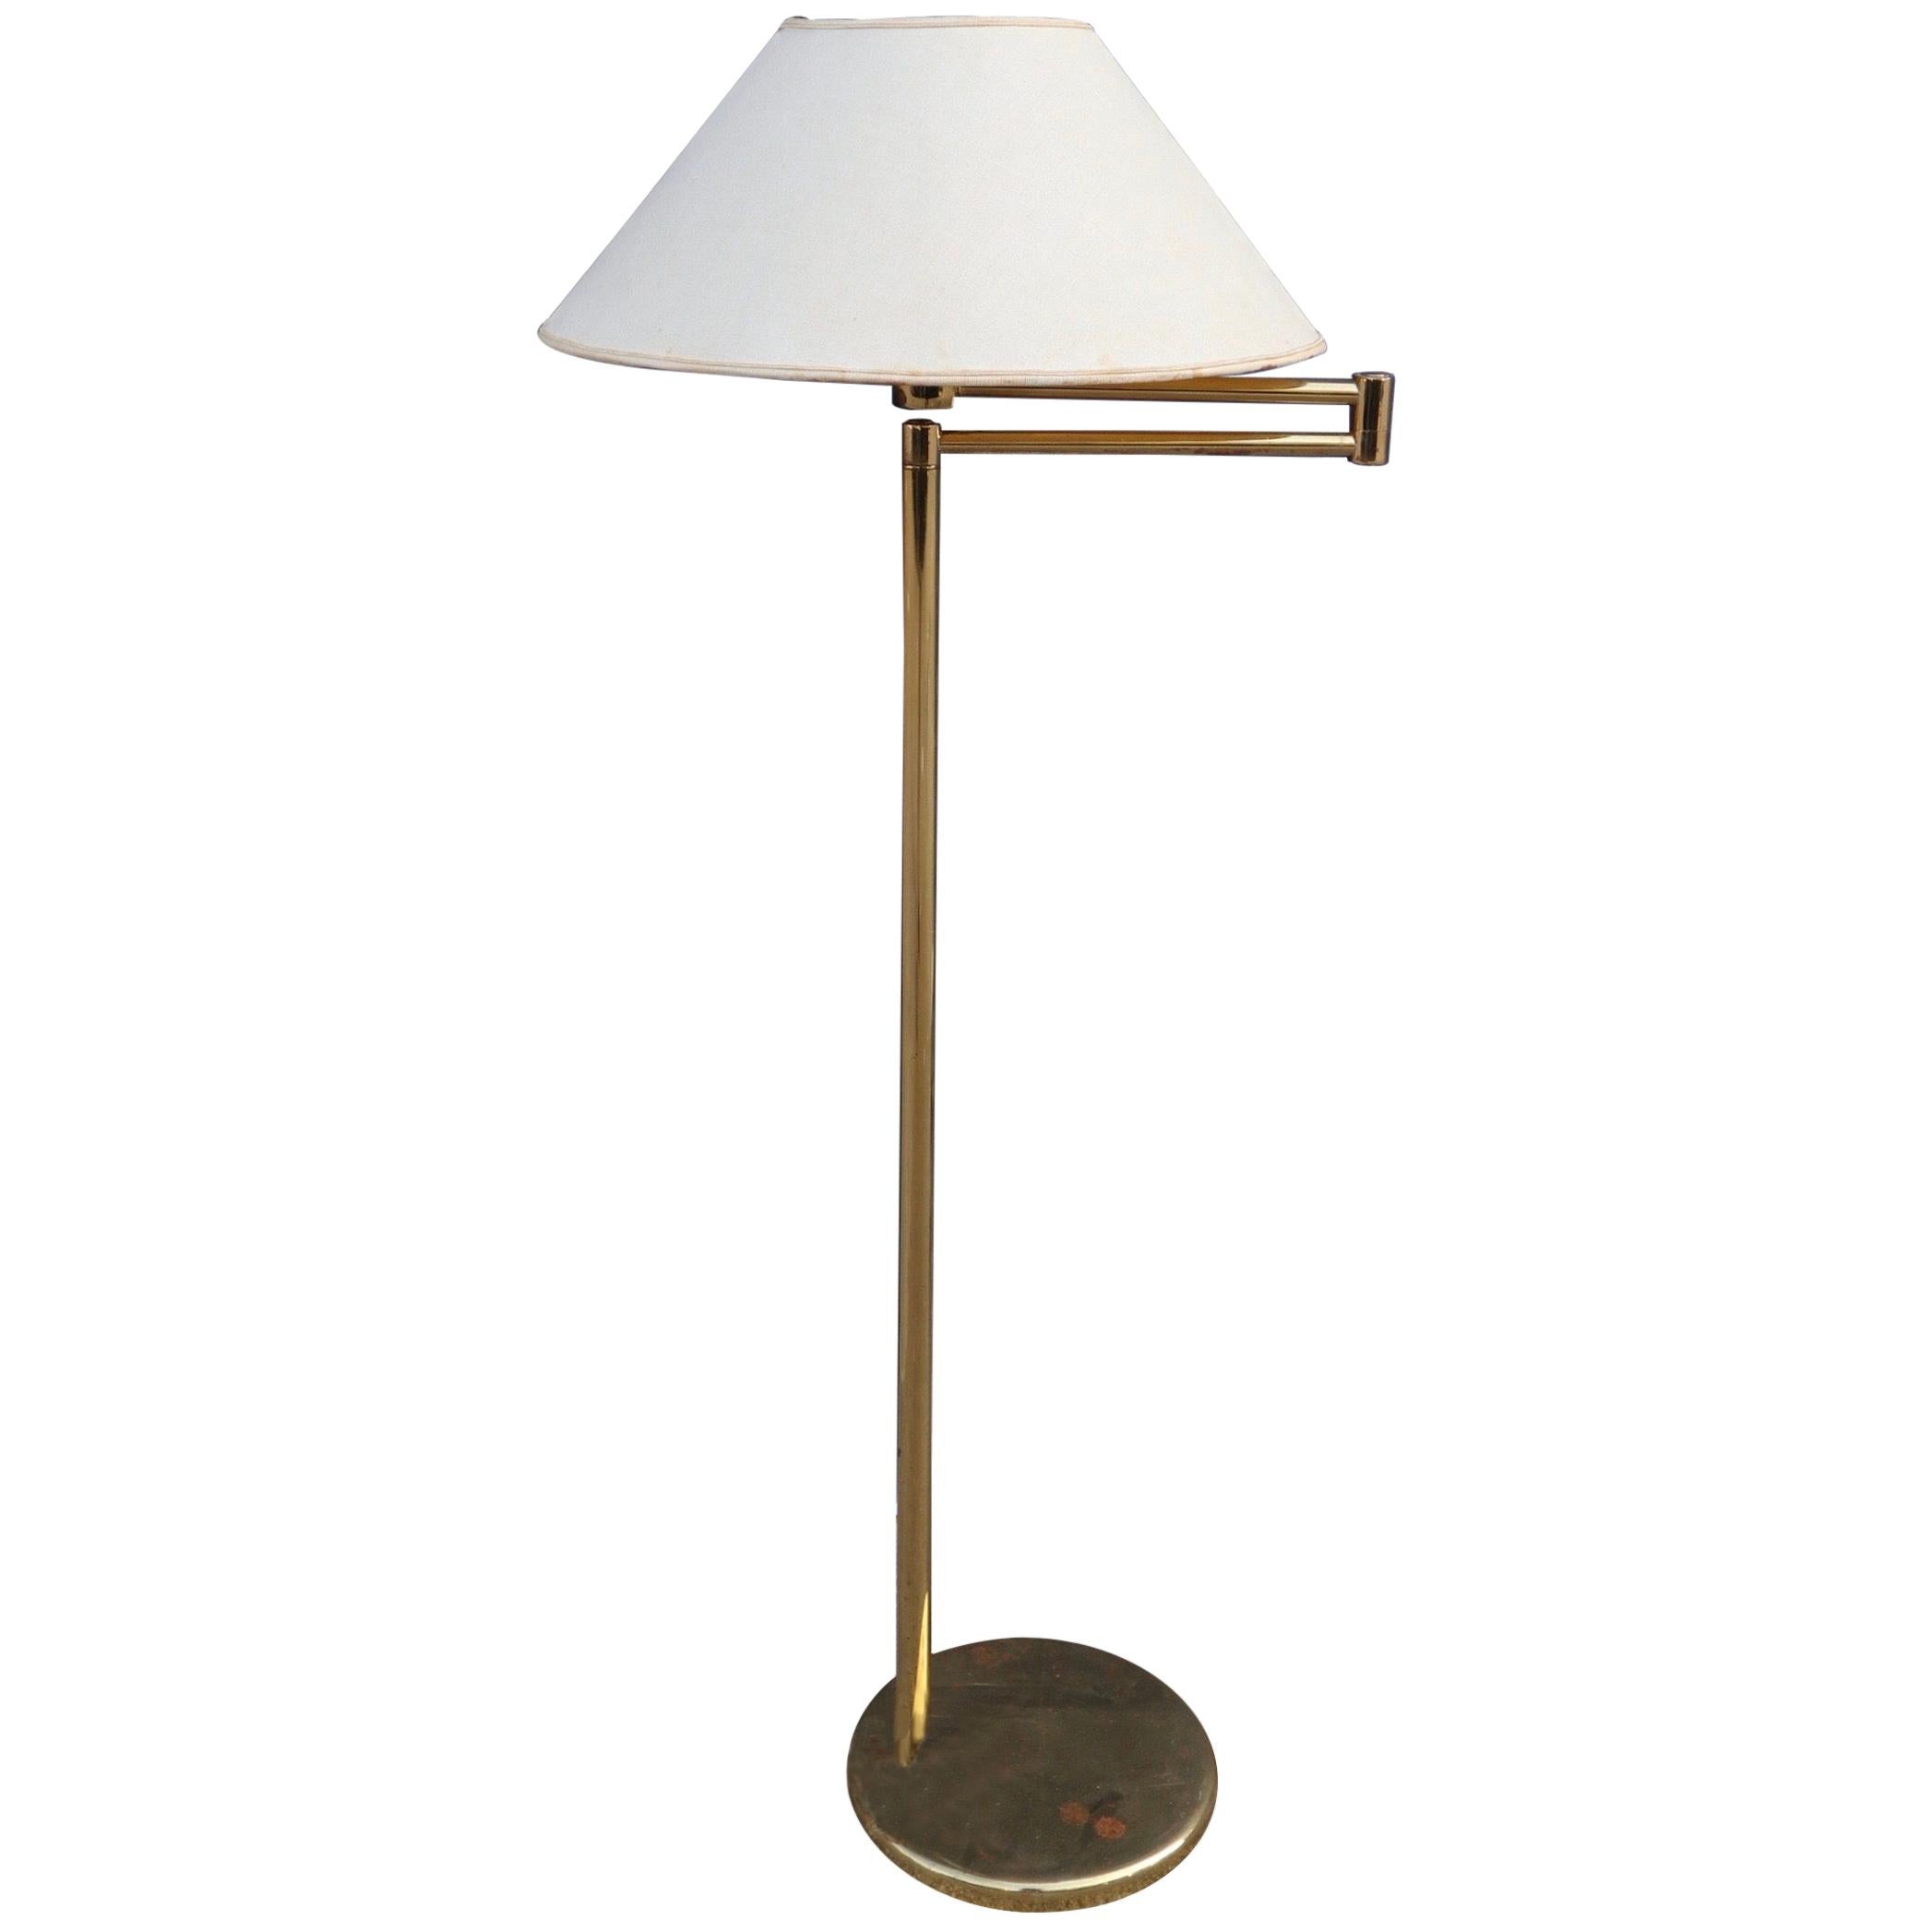 Walter Von Nessen Brass Floor Lamp with Swing Arm